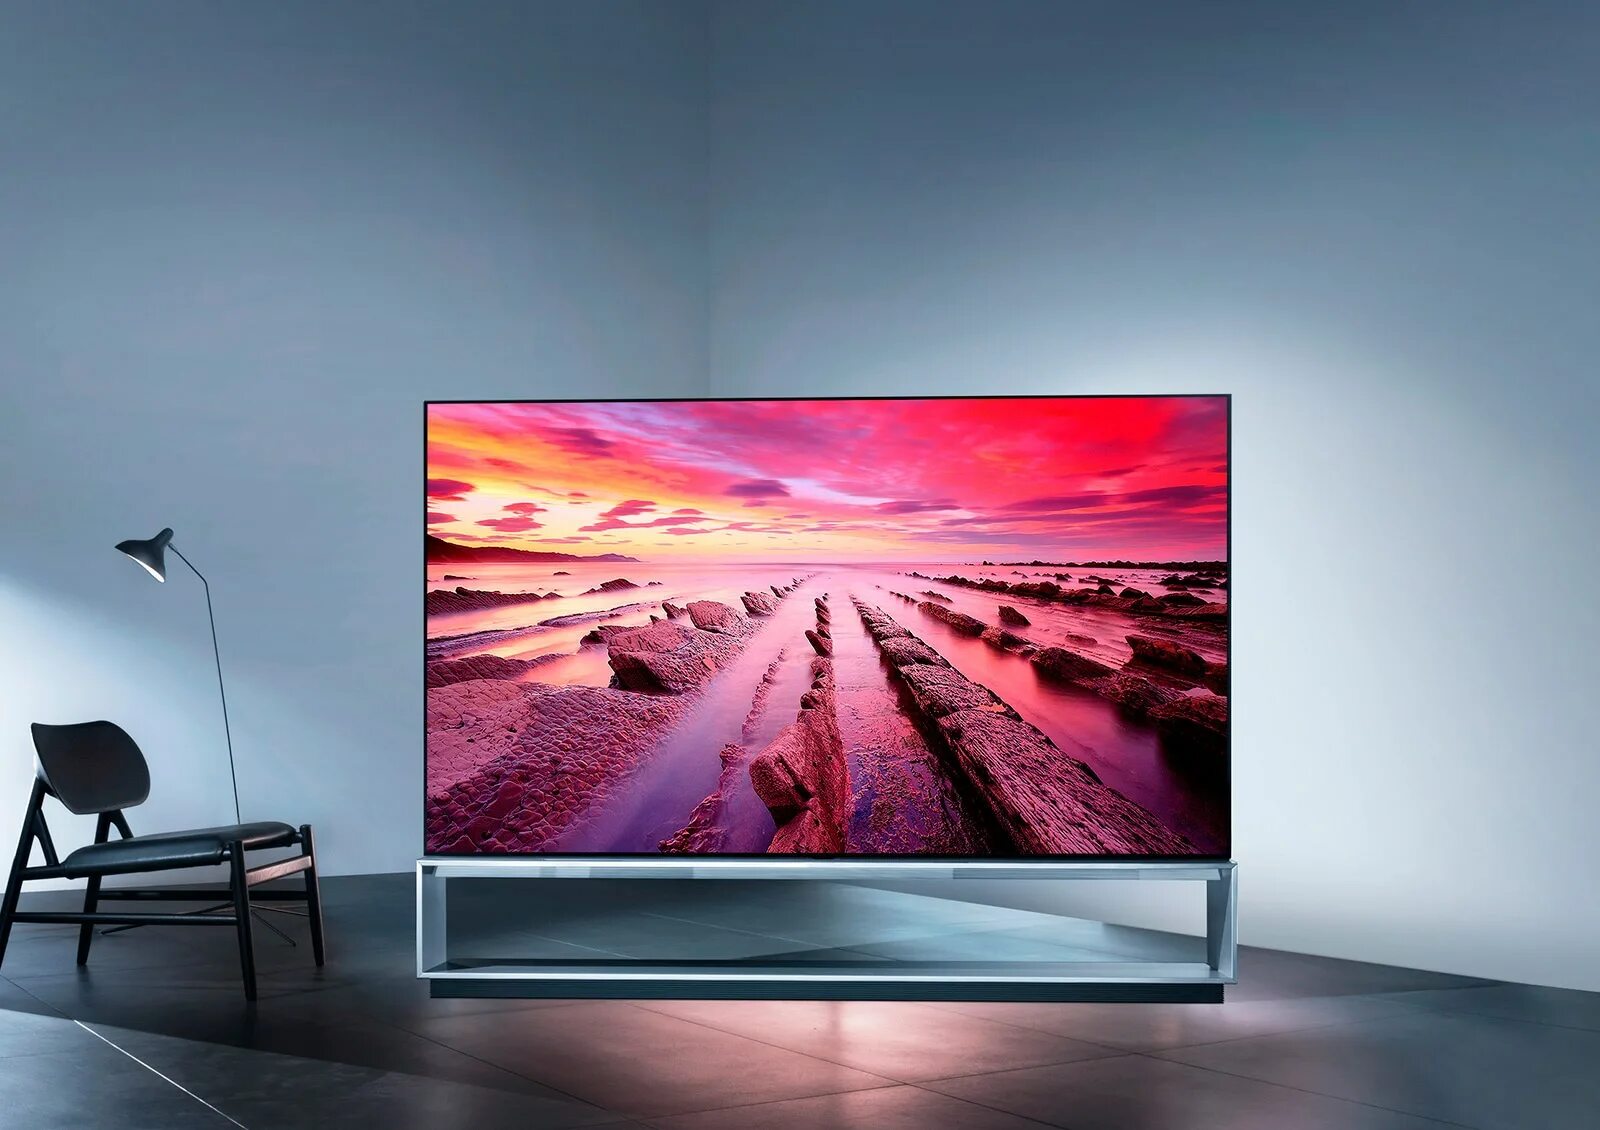 LG OLED 8k. LG OLED z9. LG TV 2021.